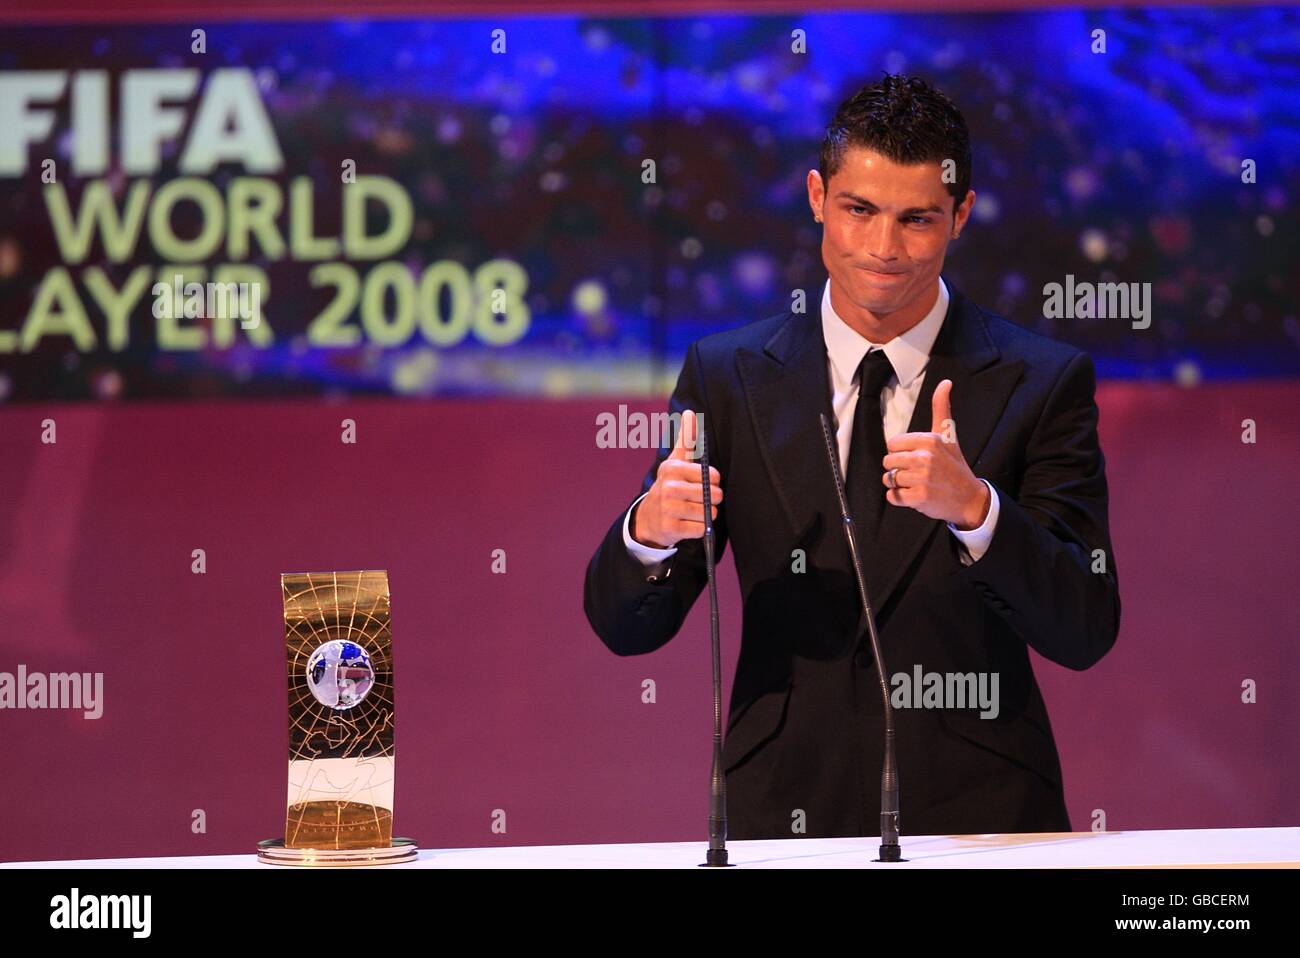 Calcio - FIFA World Player Gala 2008 - Teatro dell'Opera di Zurigo. Cristiano Ronaldo del Manchester United con il premio FIFA World Player of the Year Foto Stock